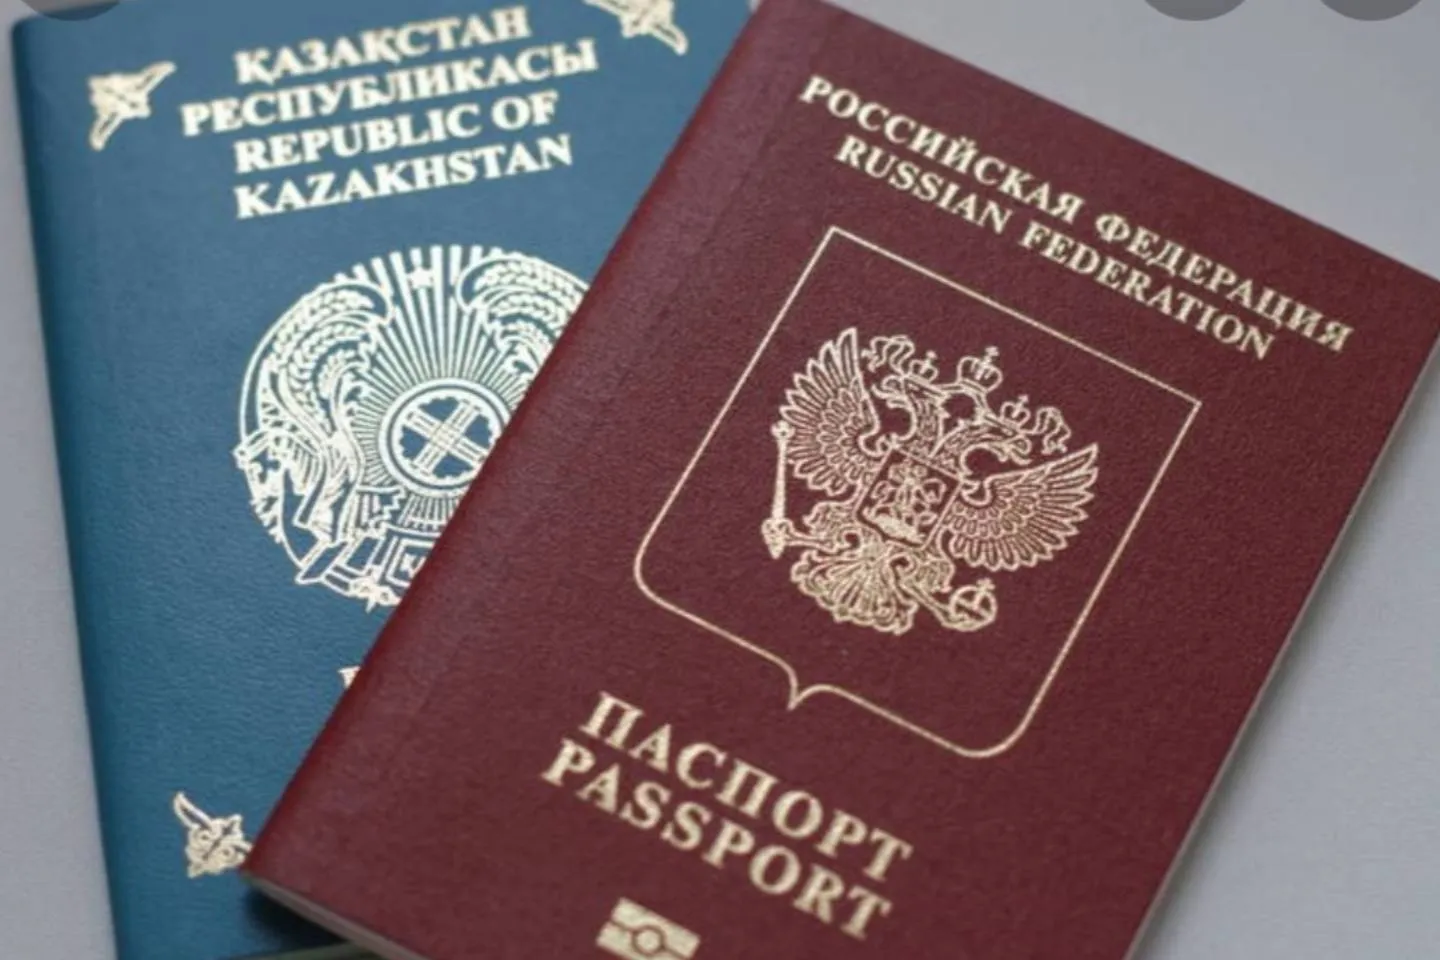 Новости Казахстана / Политика в Казахстане / Более 1000 россиян запросили гражданство Казахстана в сентябре